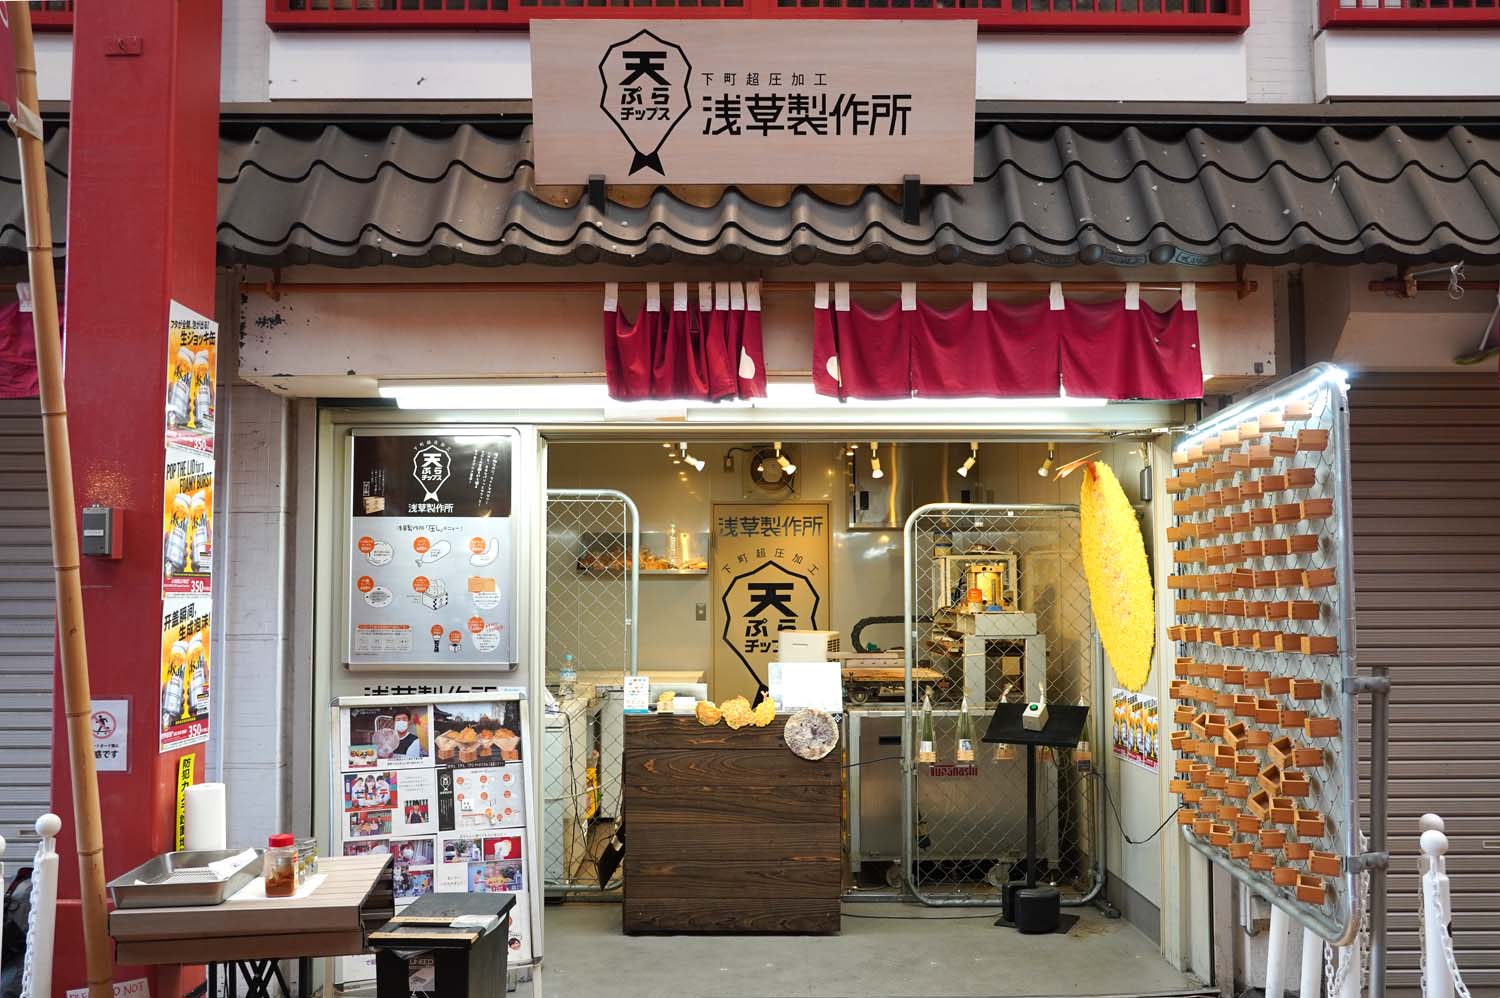 商店街は江戸町風情を演出しているため、店構えも趣がある。